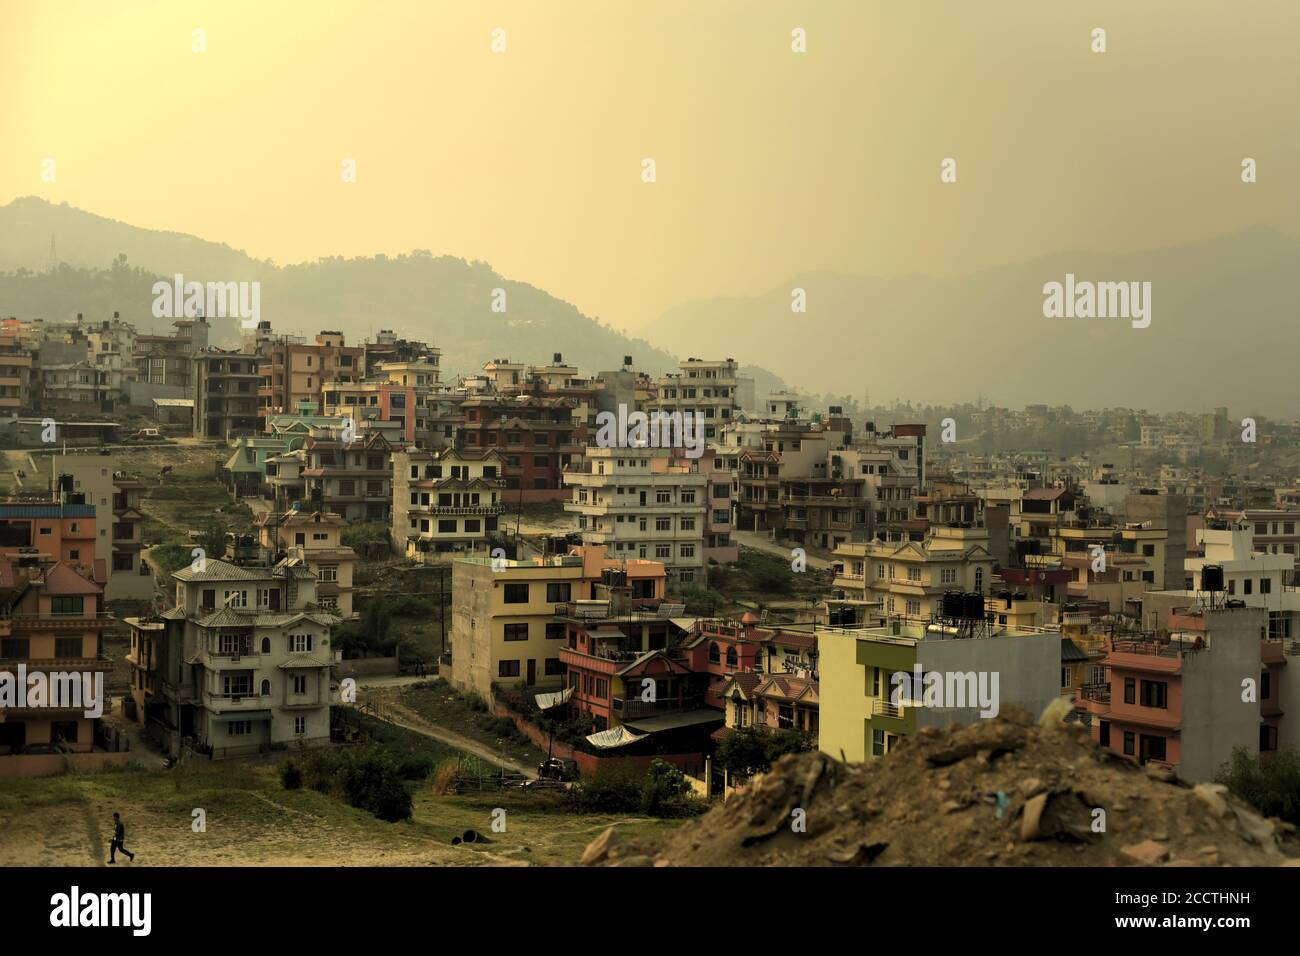 Vista de viviendas residenciales en el valle de Katmandú, vista desde una carretera que conduce a Dhulikhel, Bagmati Pradesh, Nepal. Foto de stock